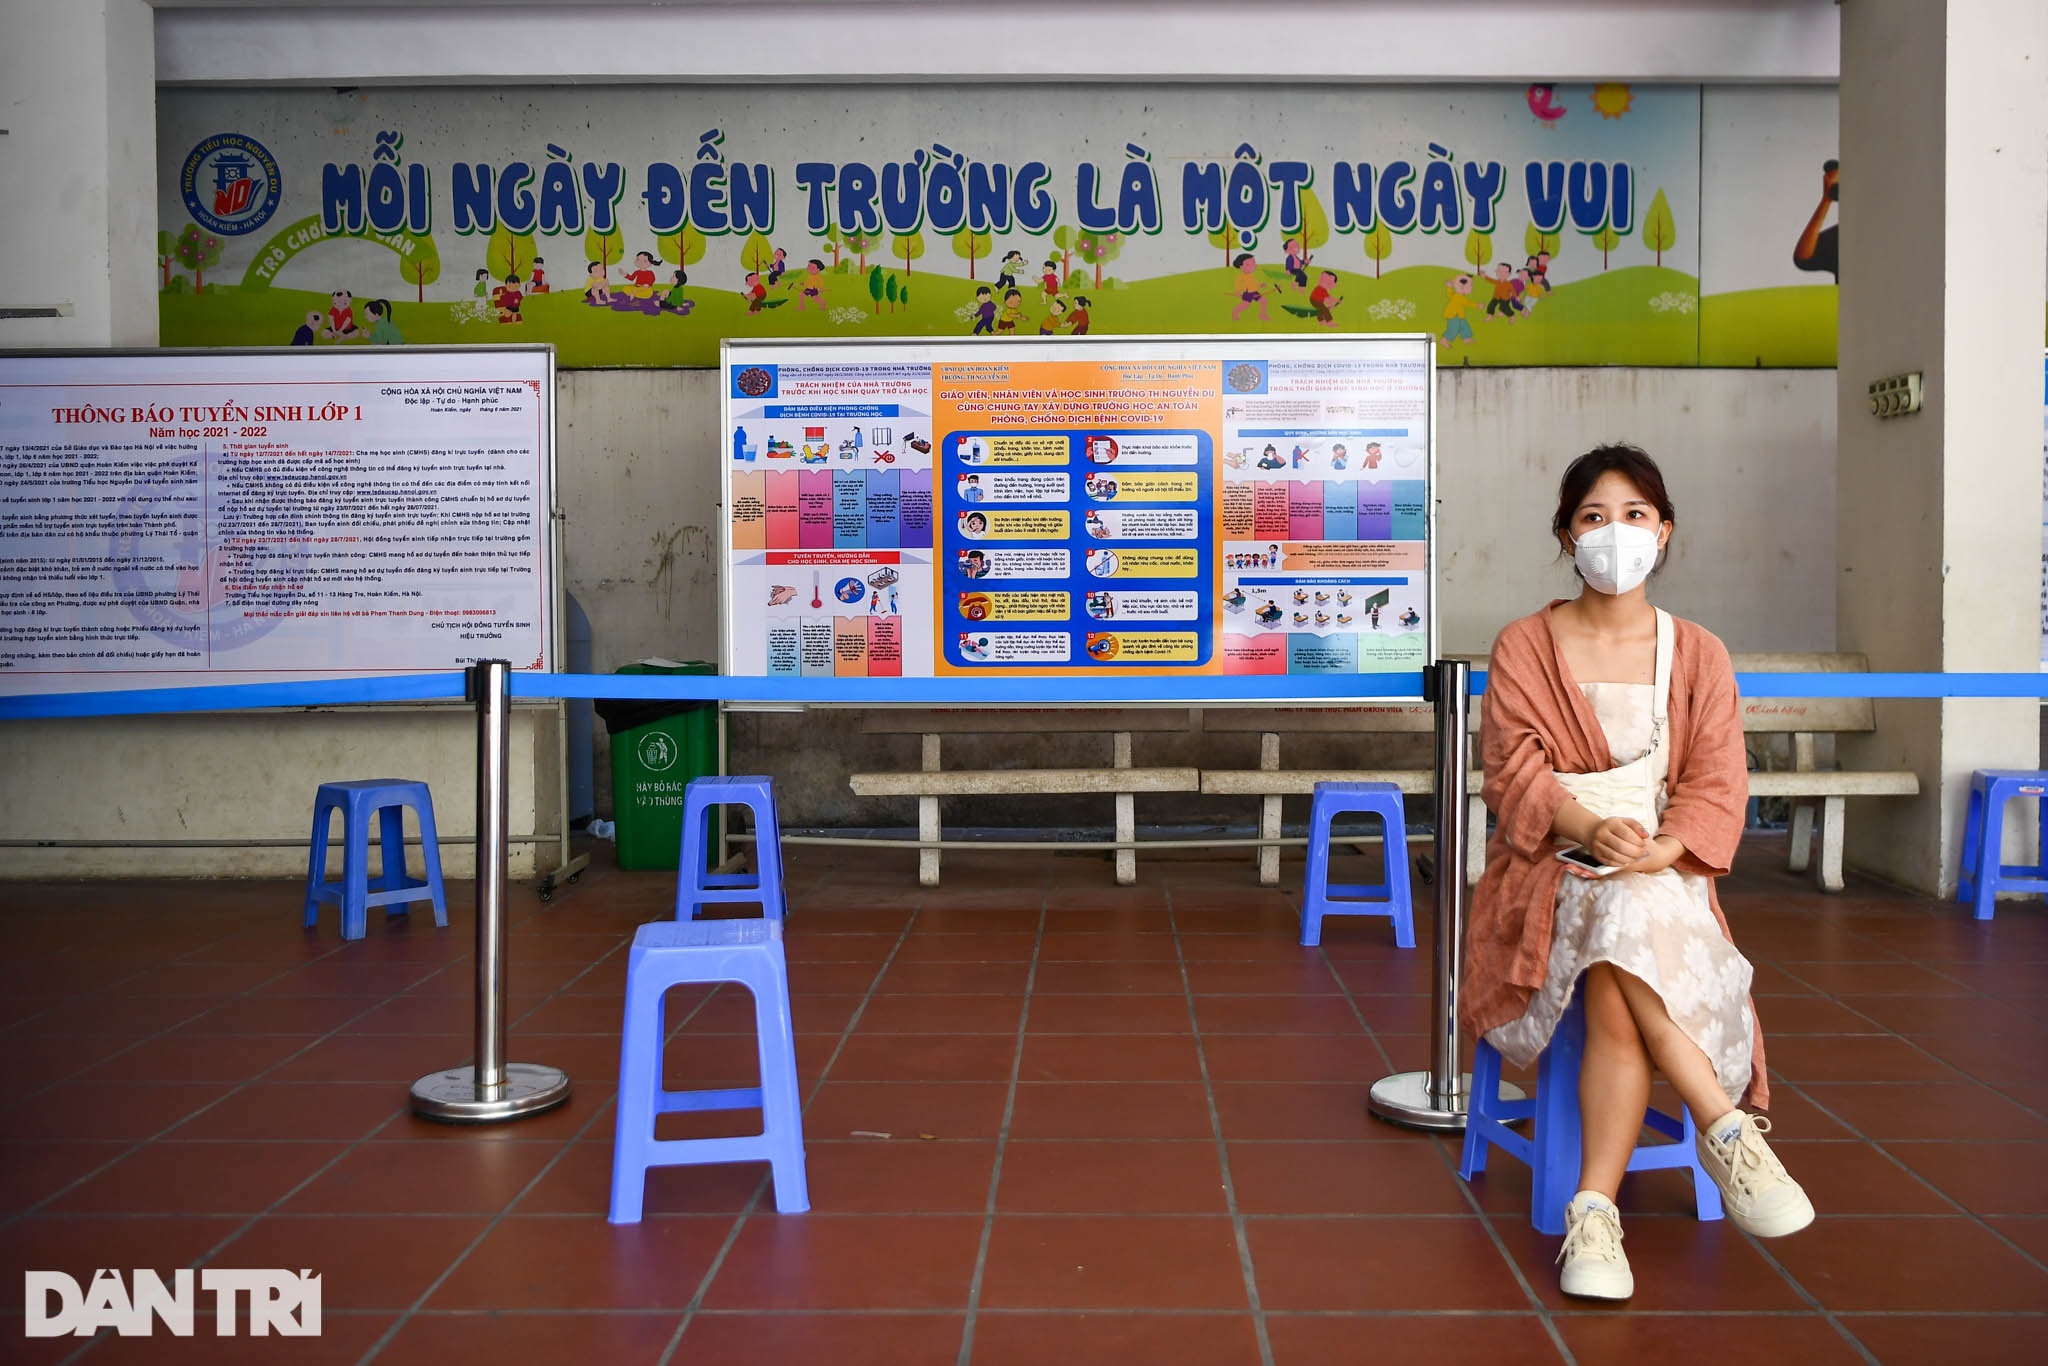 100 công dân đầu tiên ở Hà Nội được tiêm vắc xin theo đăng ký hộ gia đình - 6